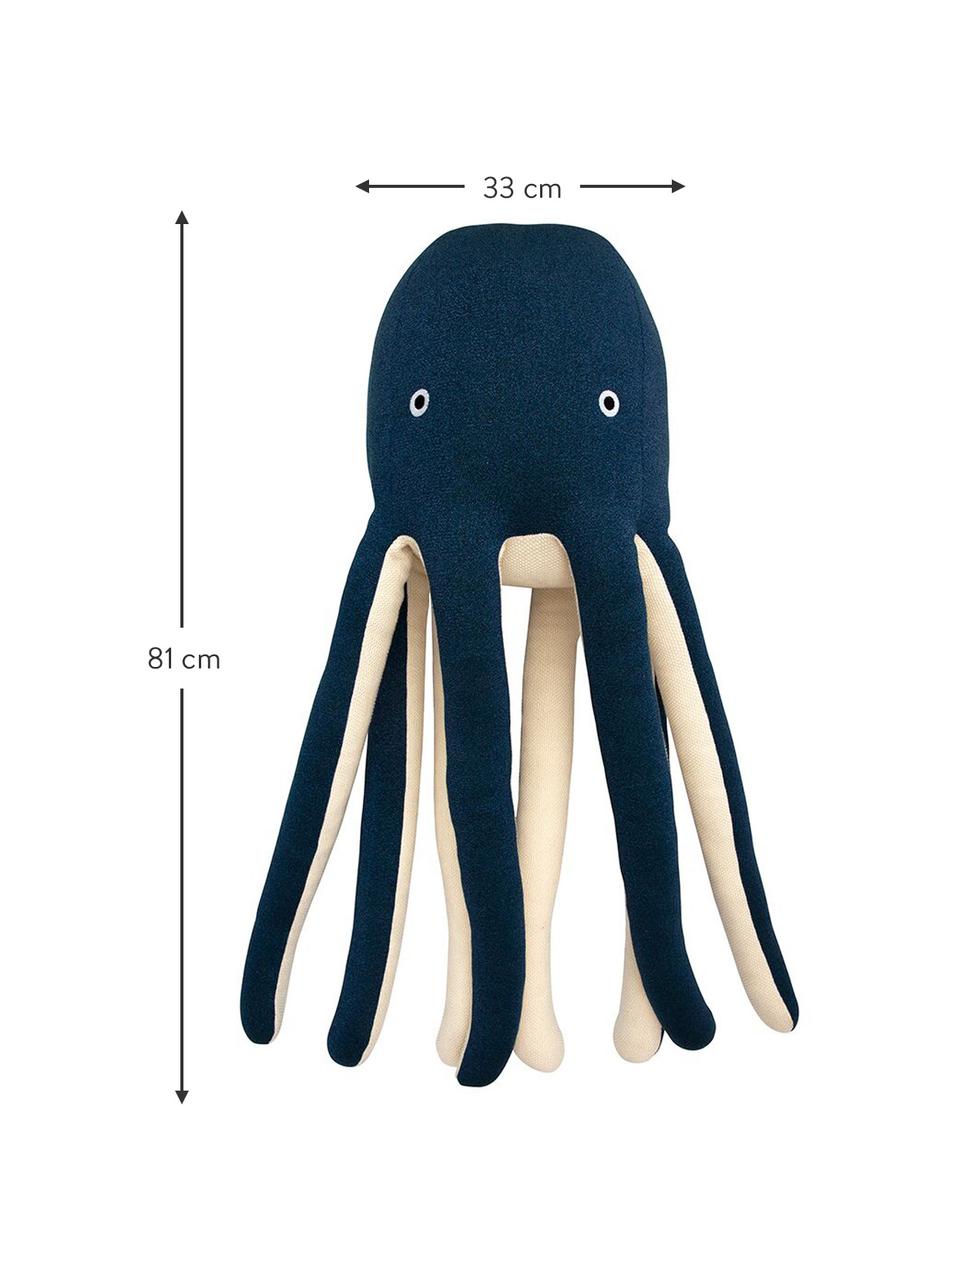 Peluche Octopus Cosmo, 100% algodón ecológico
Certificado OCS, Azul oscuro, crema, An 33 x Al 81 cm